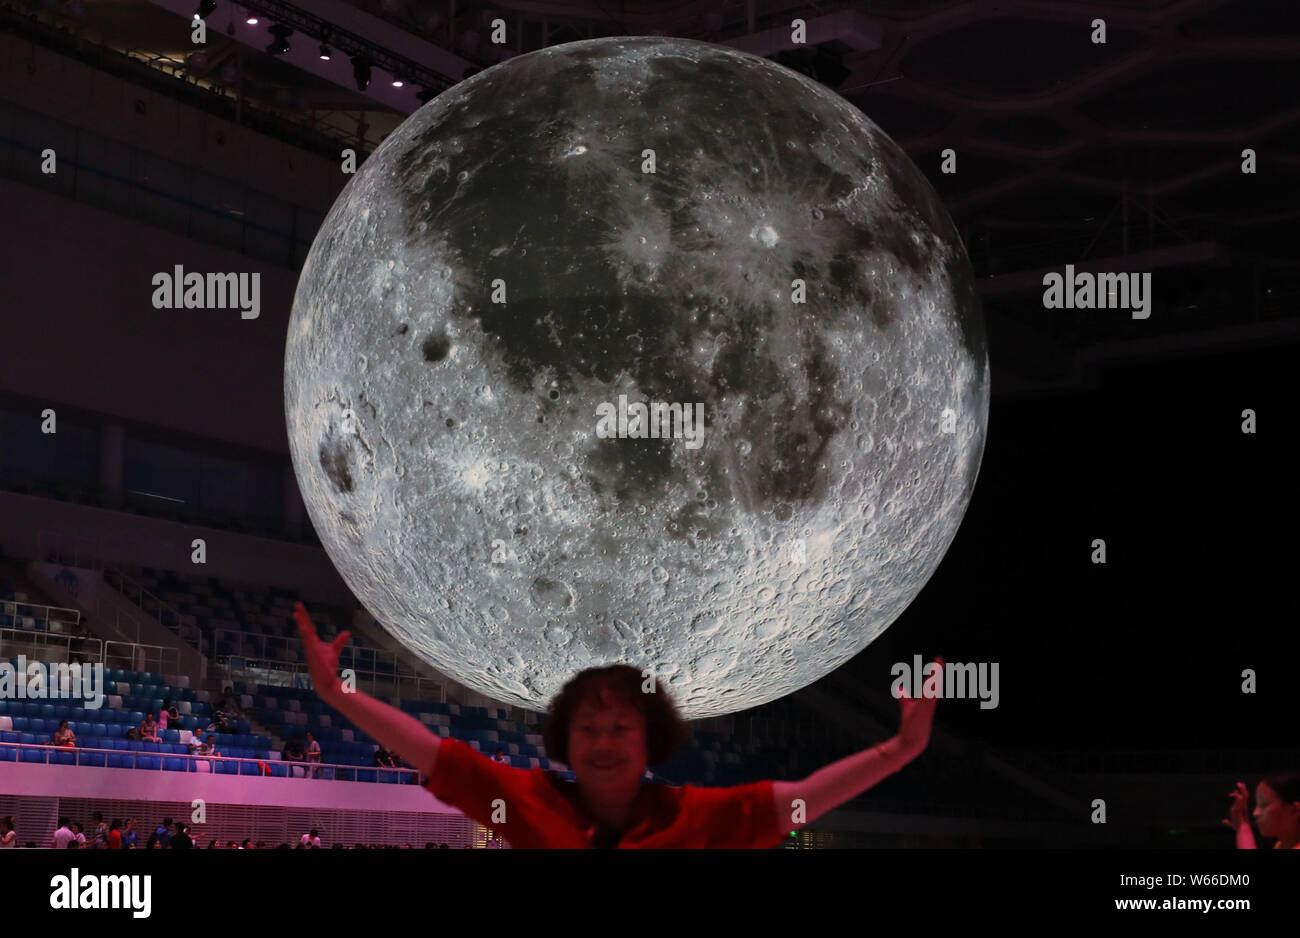 Un visitante posa con un enorme toldo modelo para una fotografía durante una exposición sobre la luna, celebrado en el Centro Acuático Nacional o "Water Cube" en Beijing, China, Foto de stock